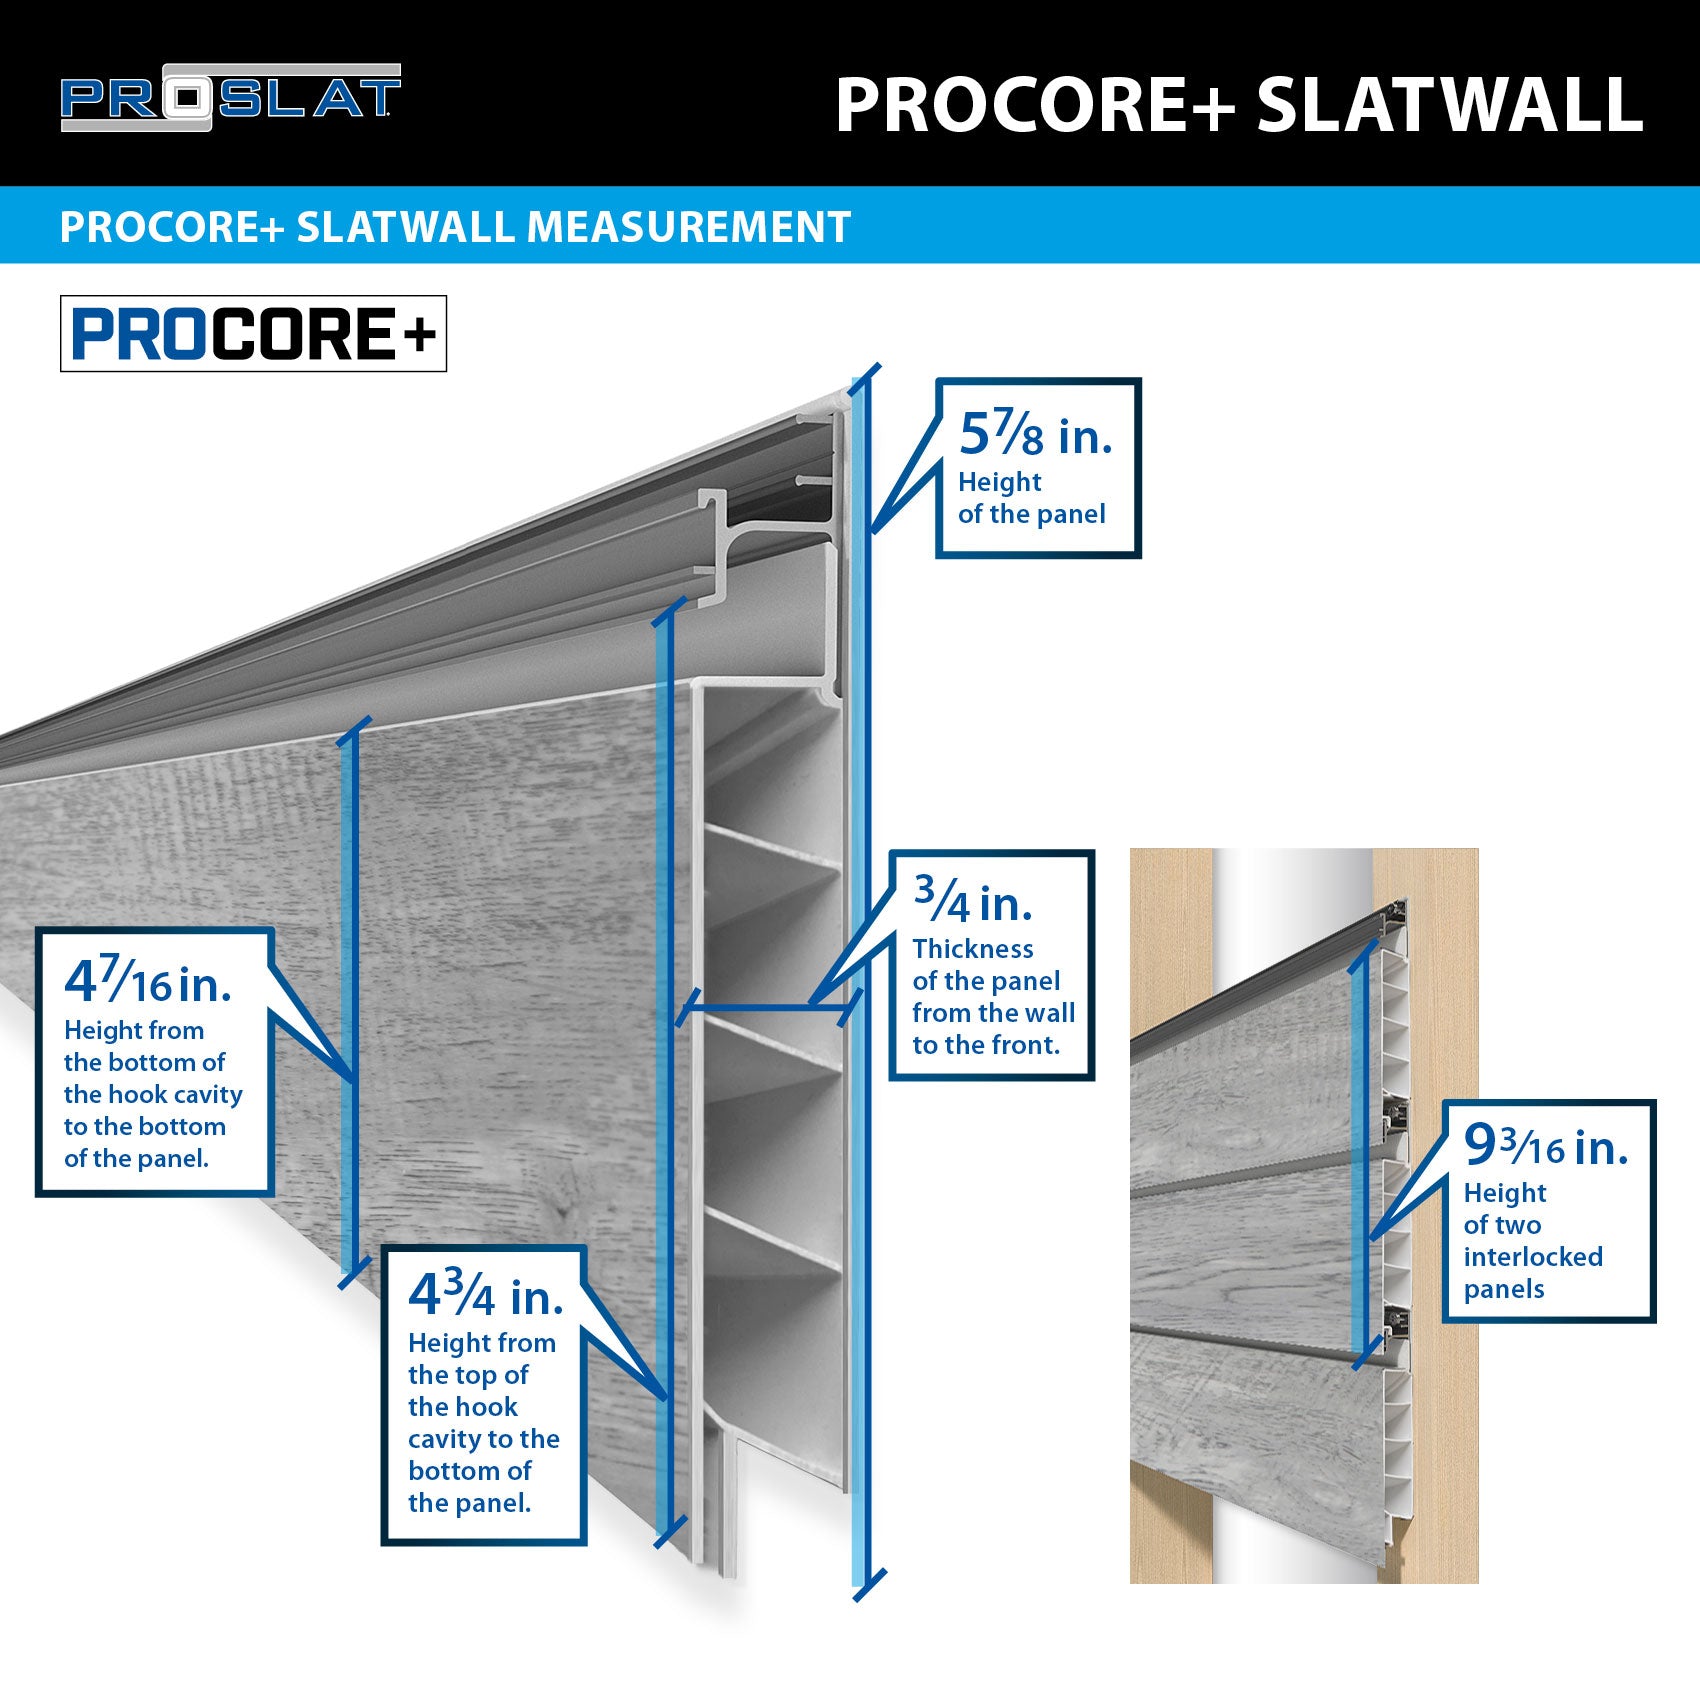 4 x 8ft. PROCORE+ Gray Wood PVC Slatwall – 4 Pack 128 sq ft